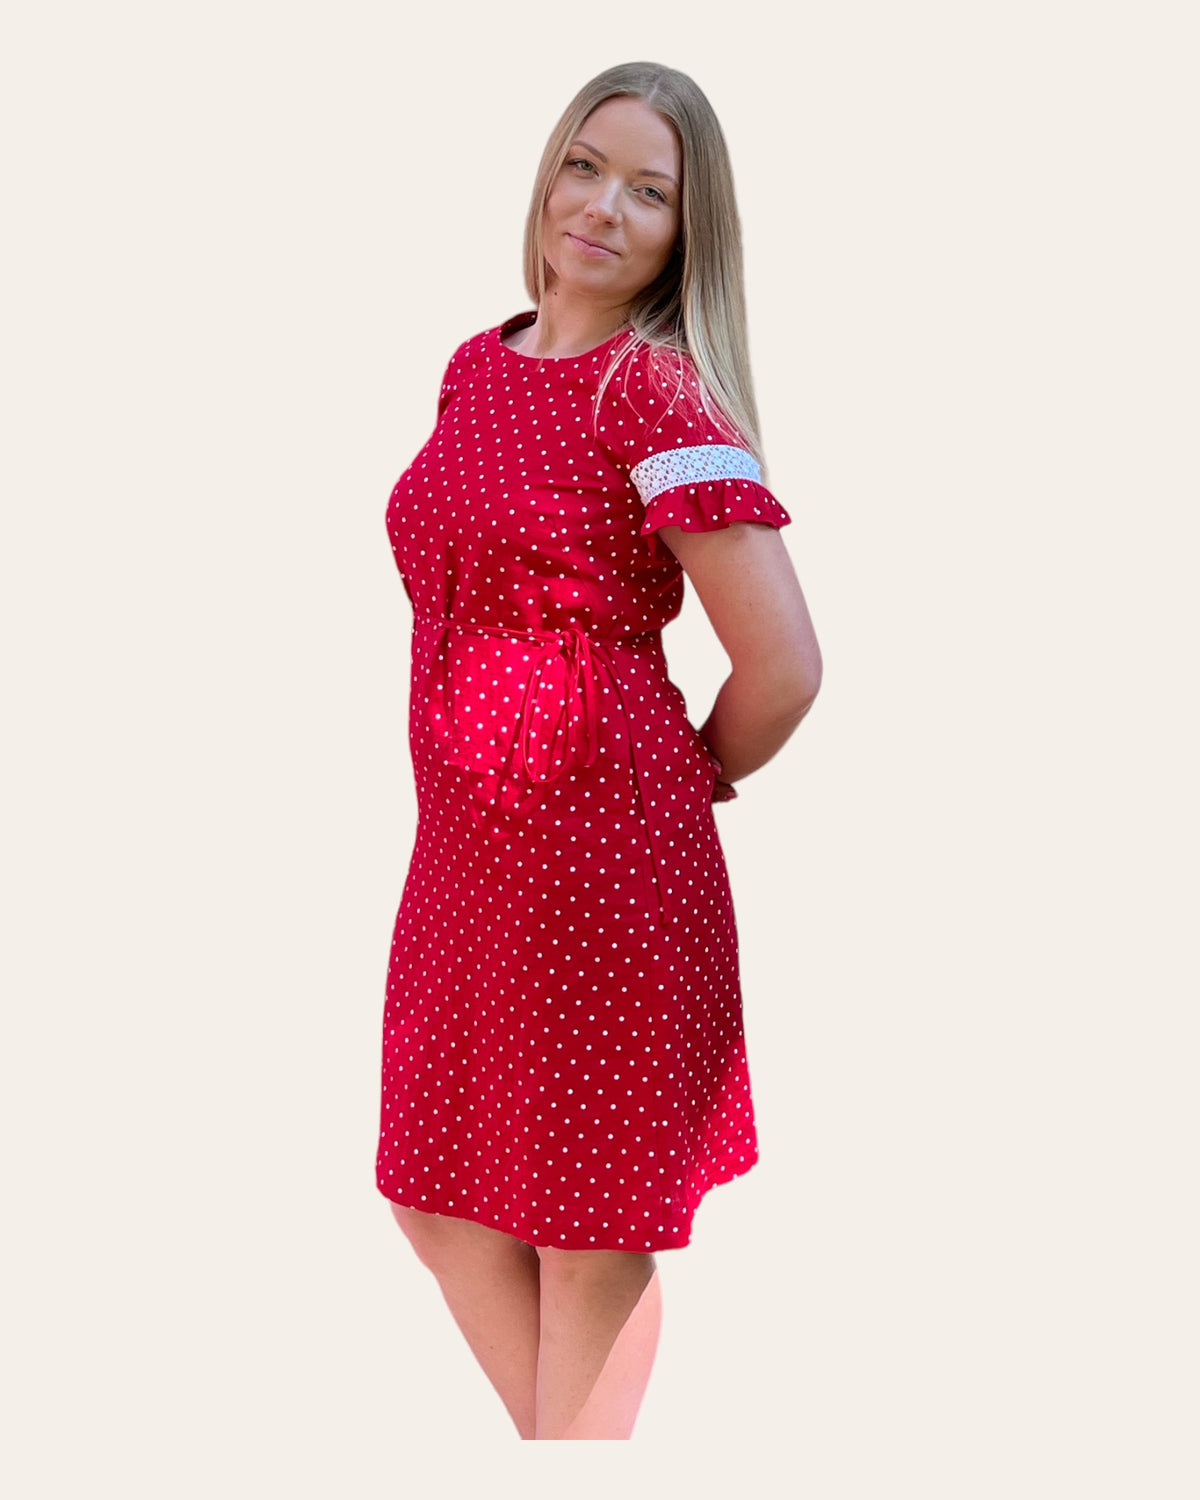 Lininė suknelė varpelio silueto raudonos spalvos